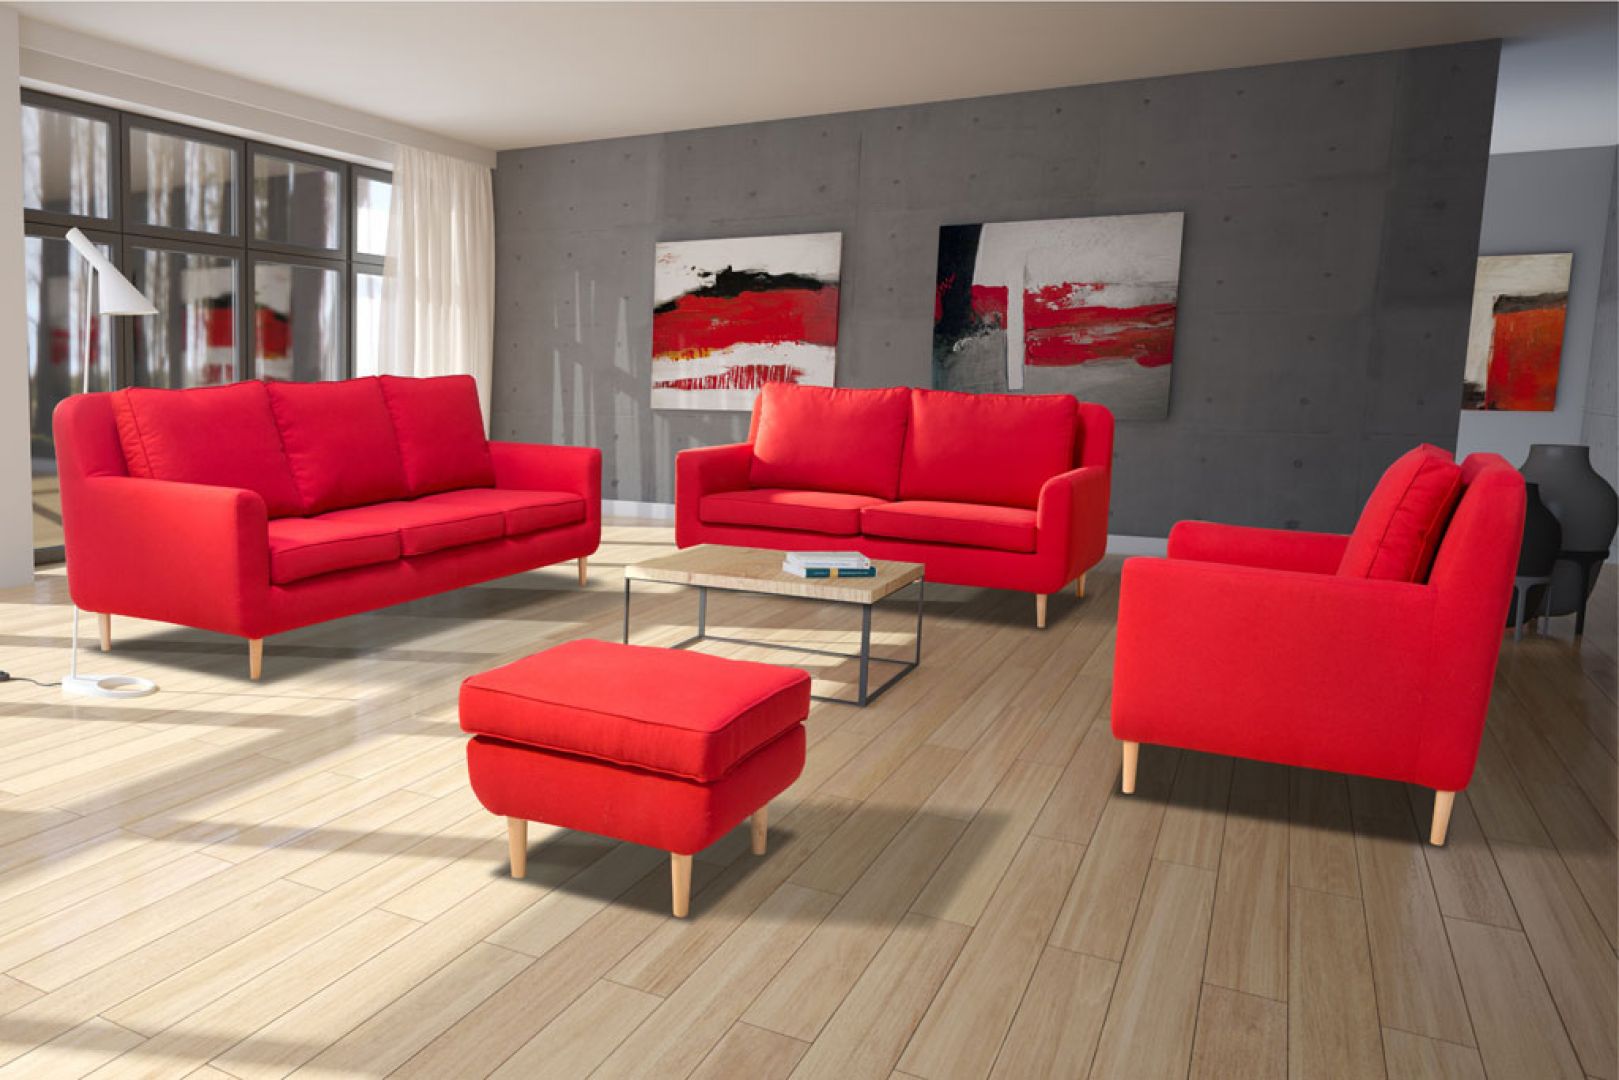 Sofa w salonie to wyraźny element dekoracyjny. Warto wykończyć ją charakterystyczną tkaniną, np. w czerwonym kolorze. Fot. Agpol